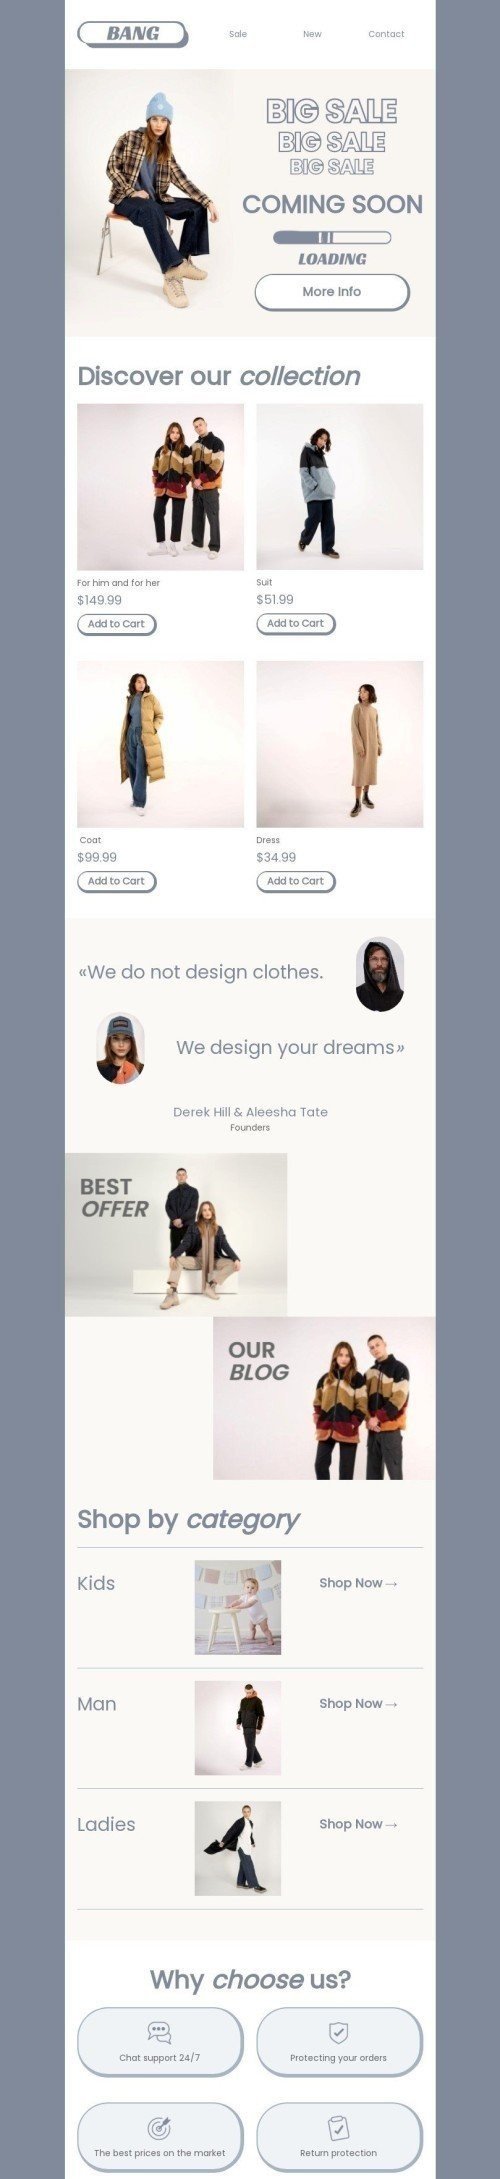 Plantilla de correo electrónico «Diseñamos tus sueños» de Próximamente para la industria de Moda Vista de escritorio